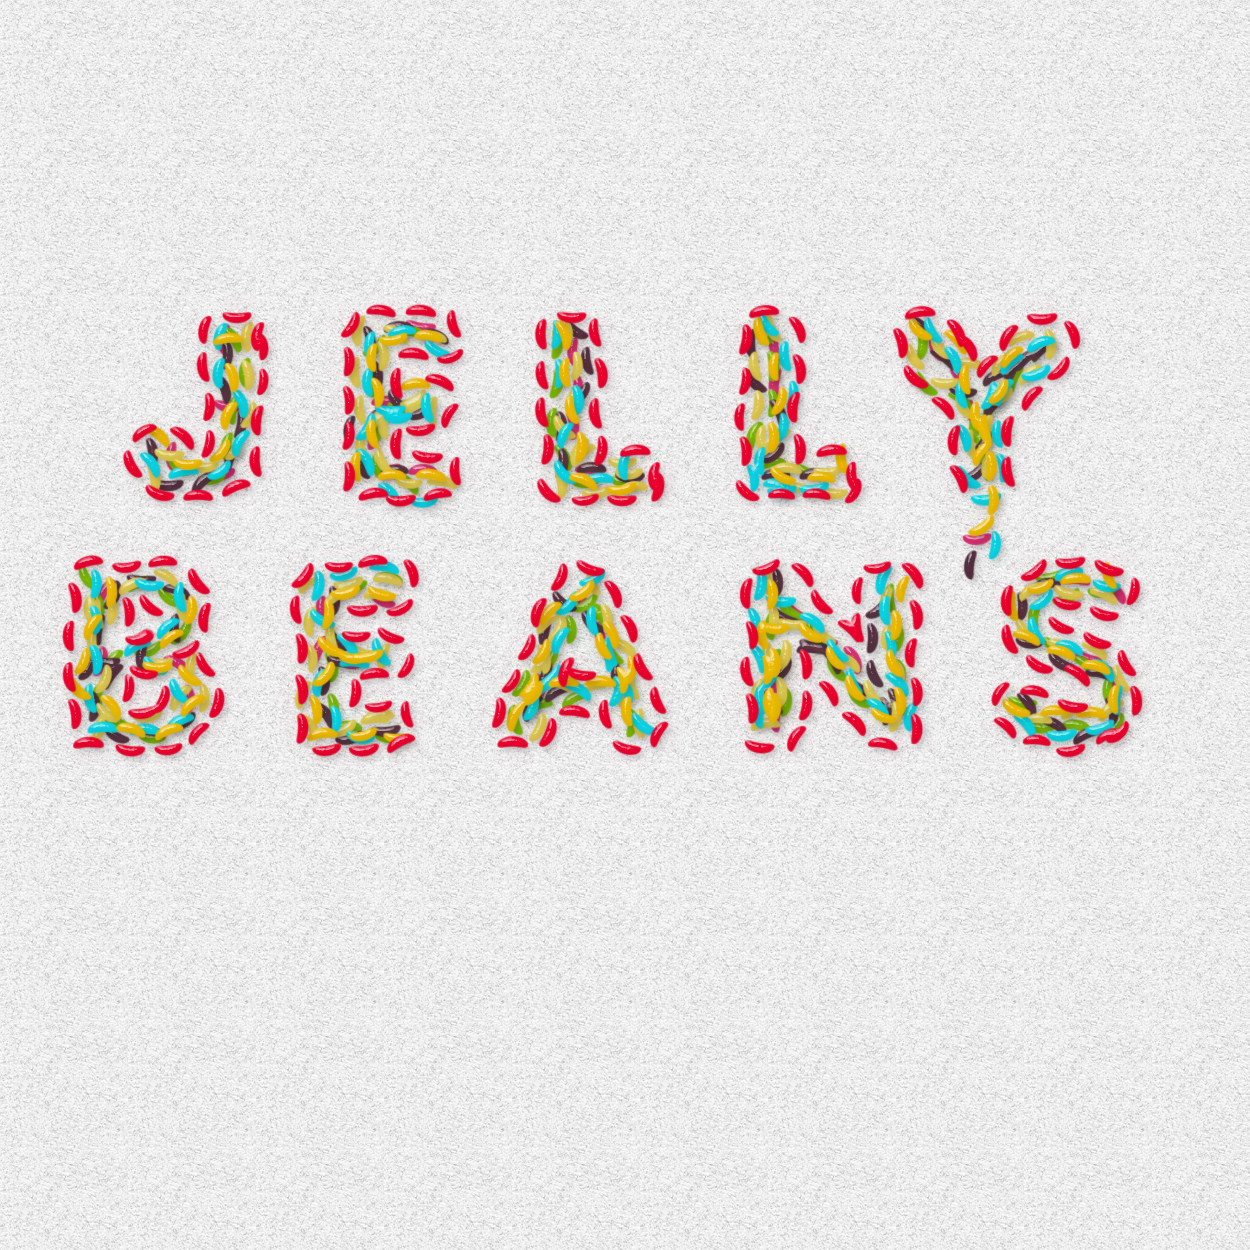 jellybean.jpg